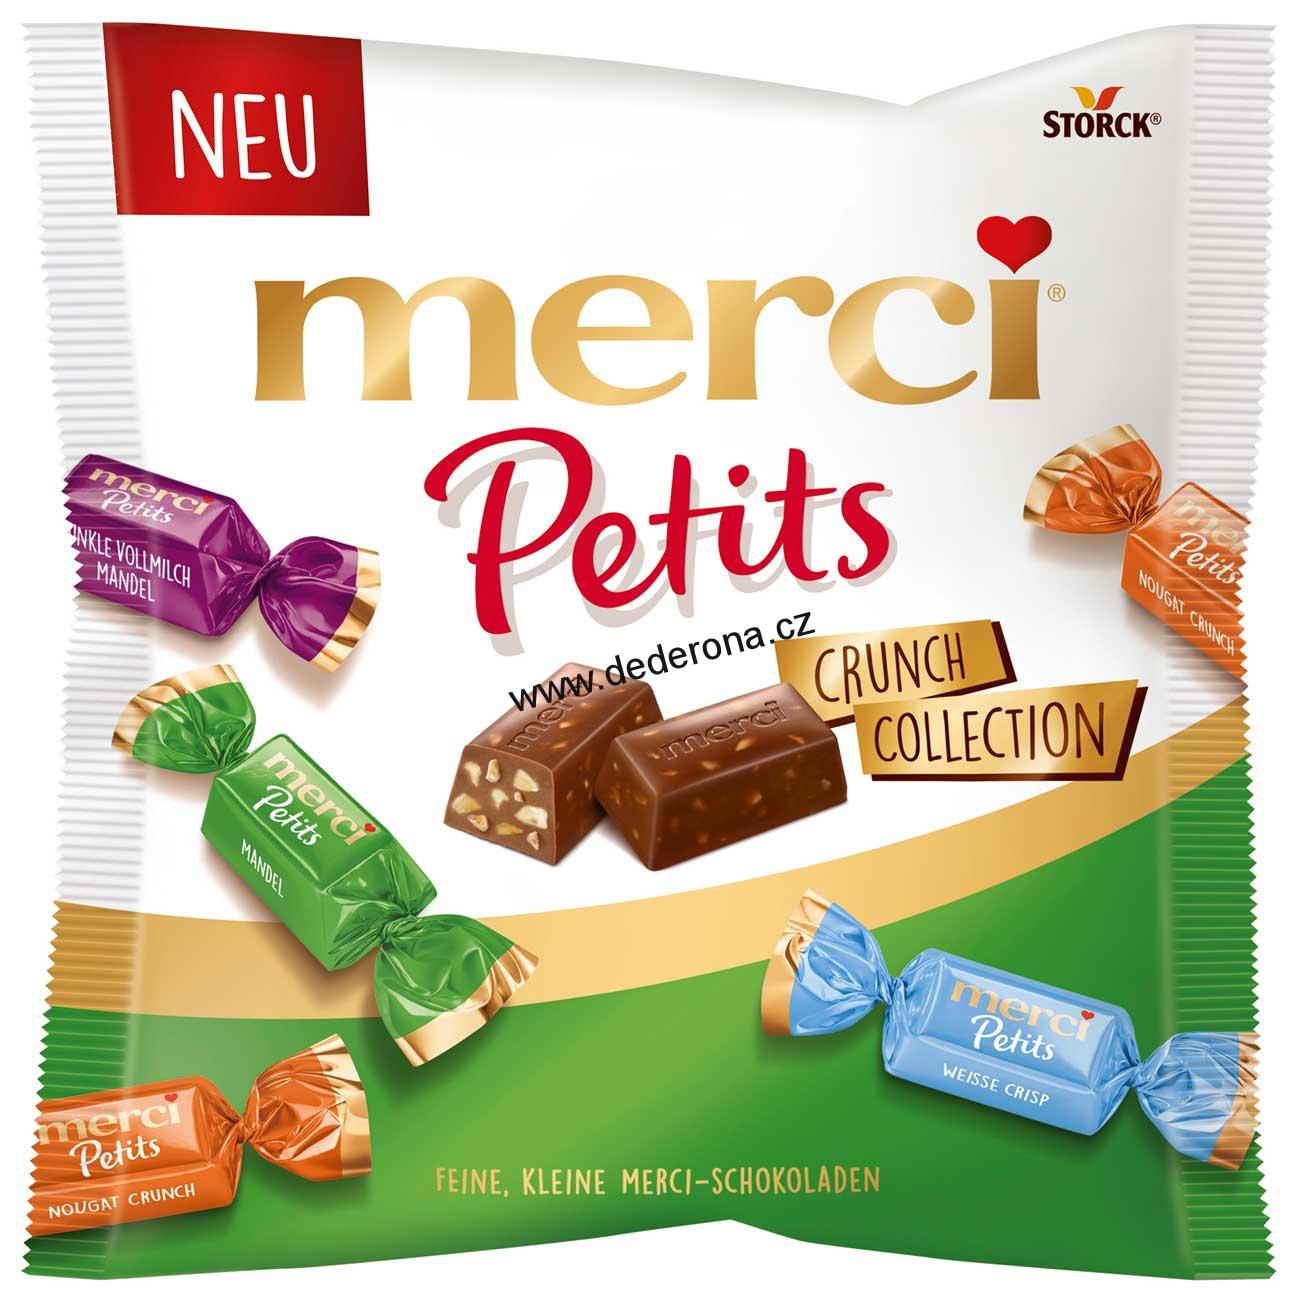 Merci Petits - Čokoládové bonbóny MIX 125g - Německo!